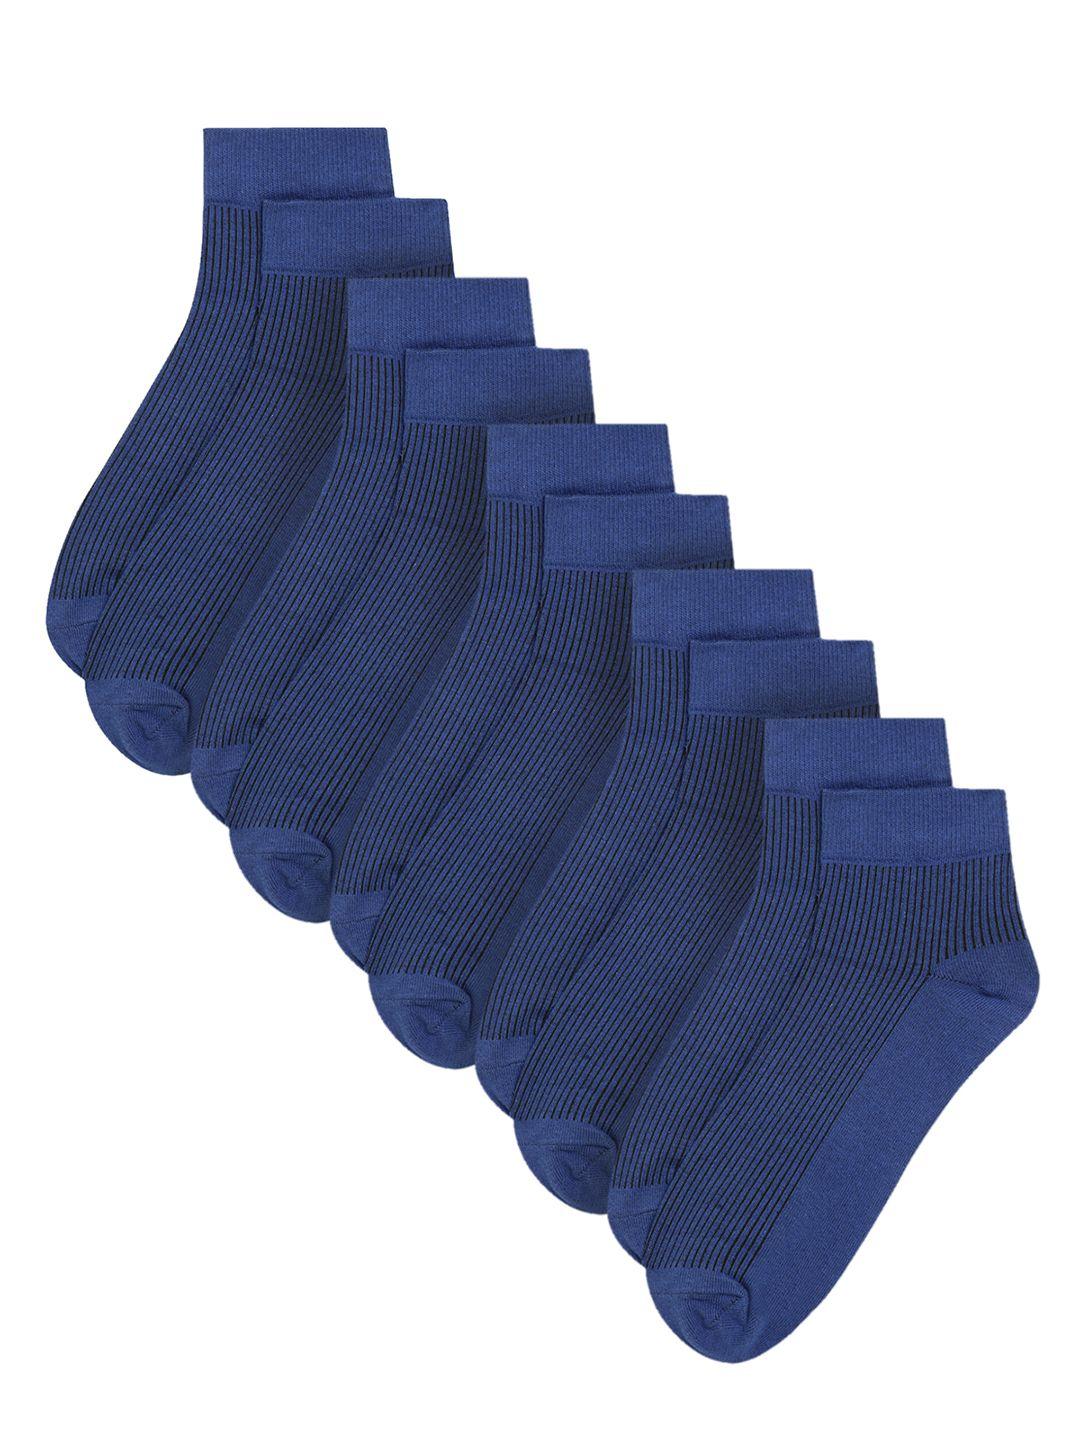 cantabil men set of 5 blue ankle-length socks